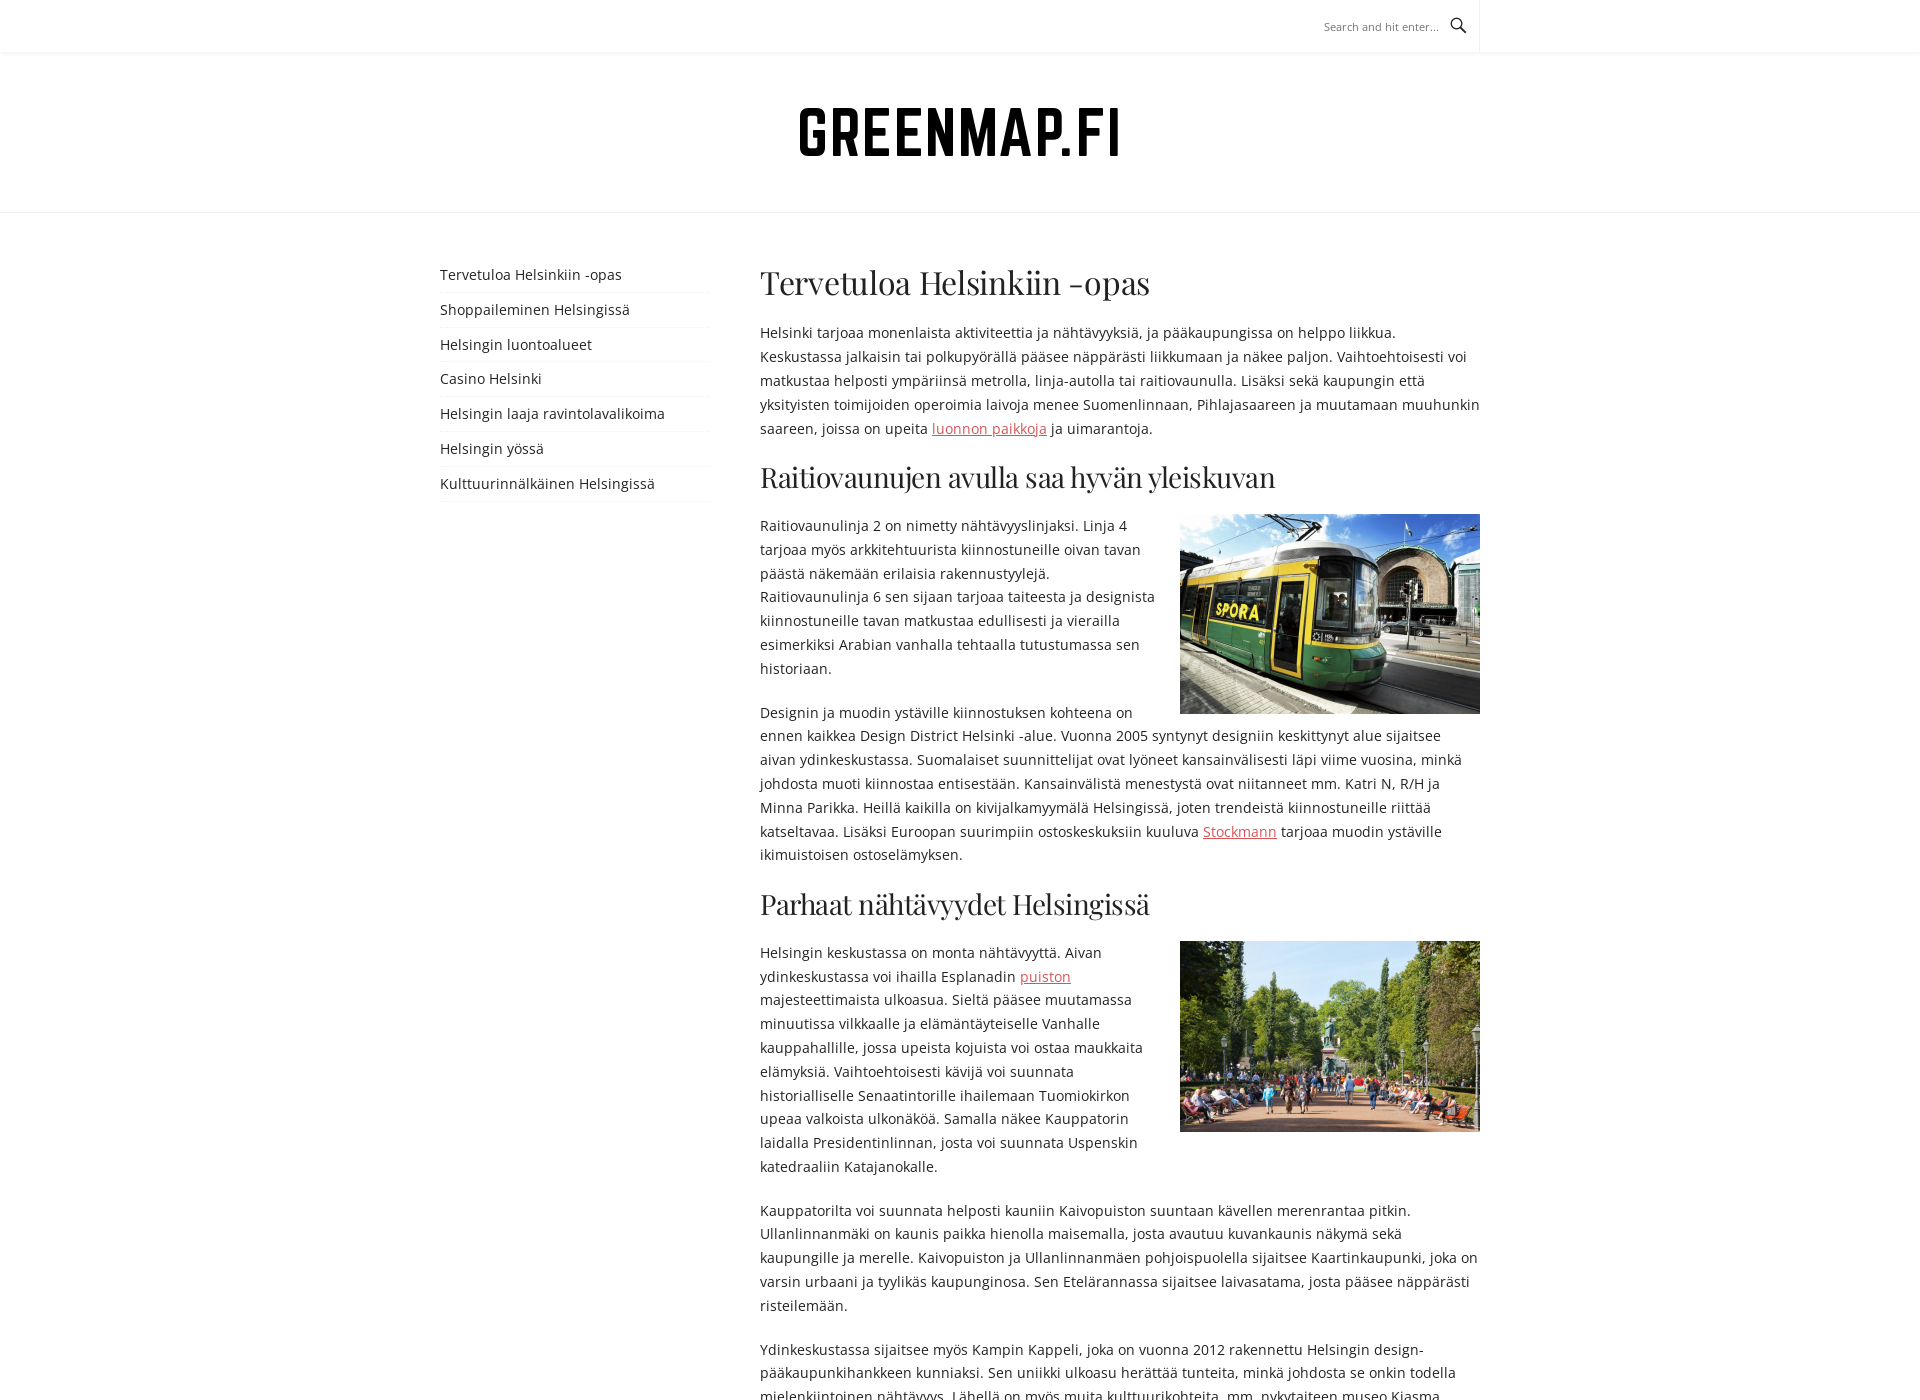 Näyttökuva greenmap.fi